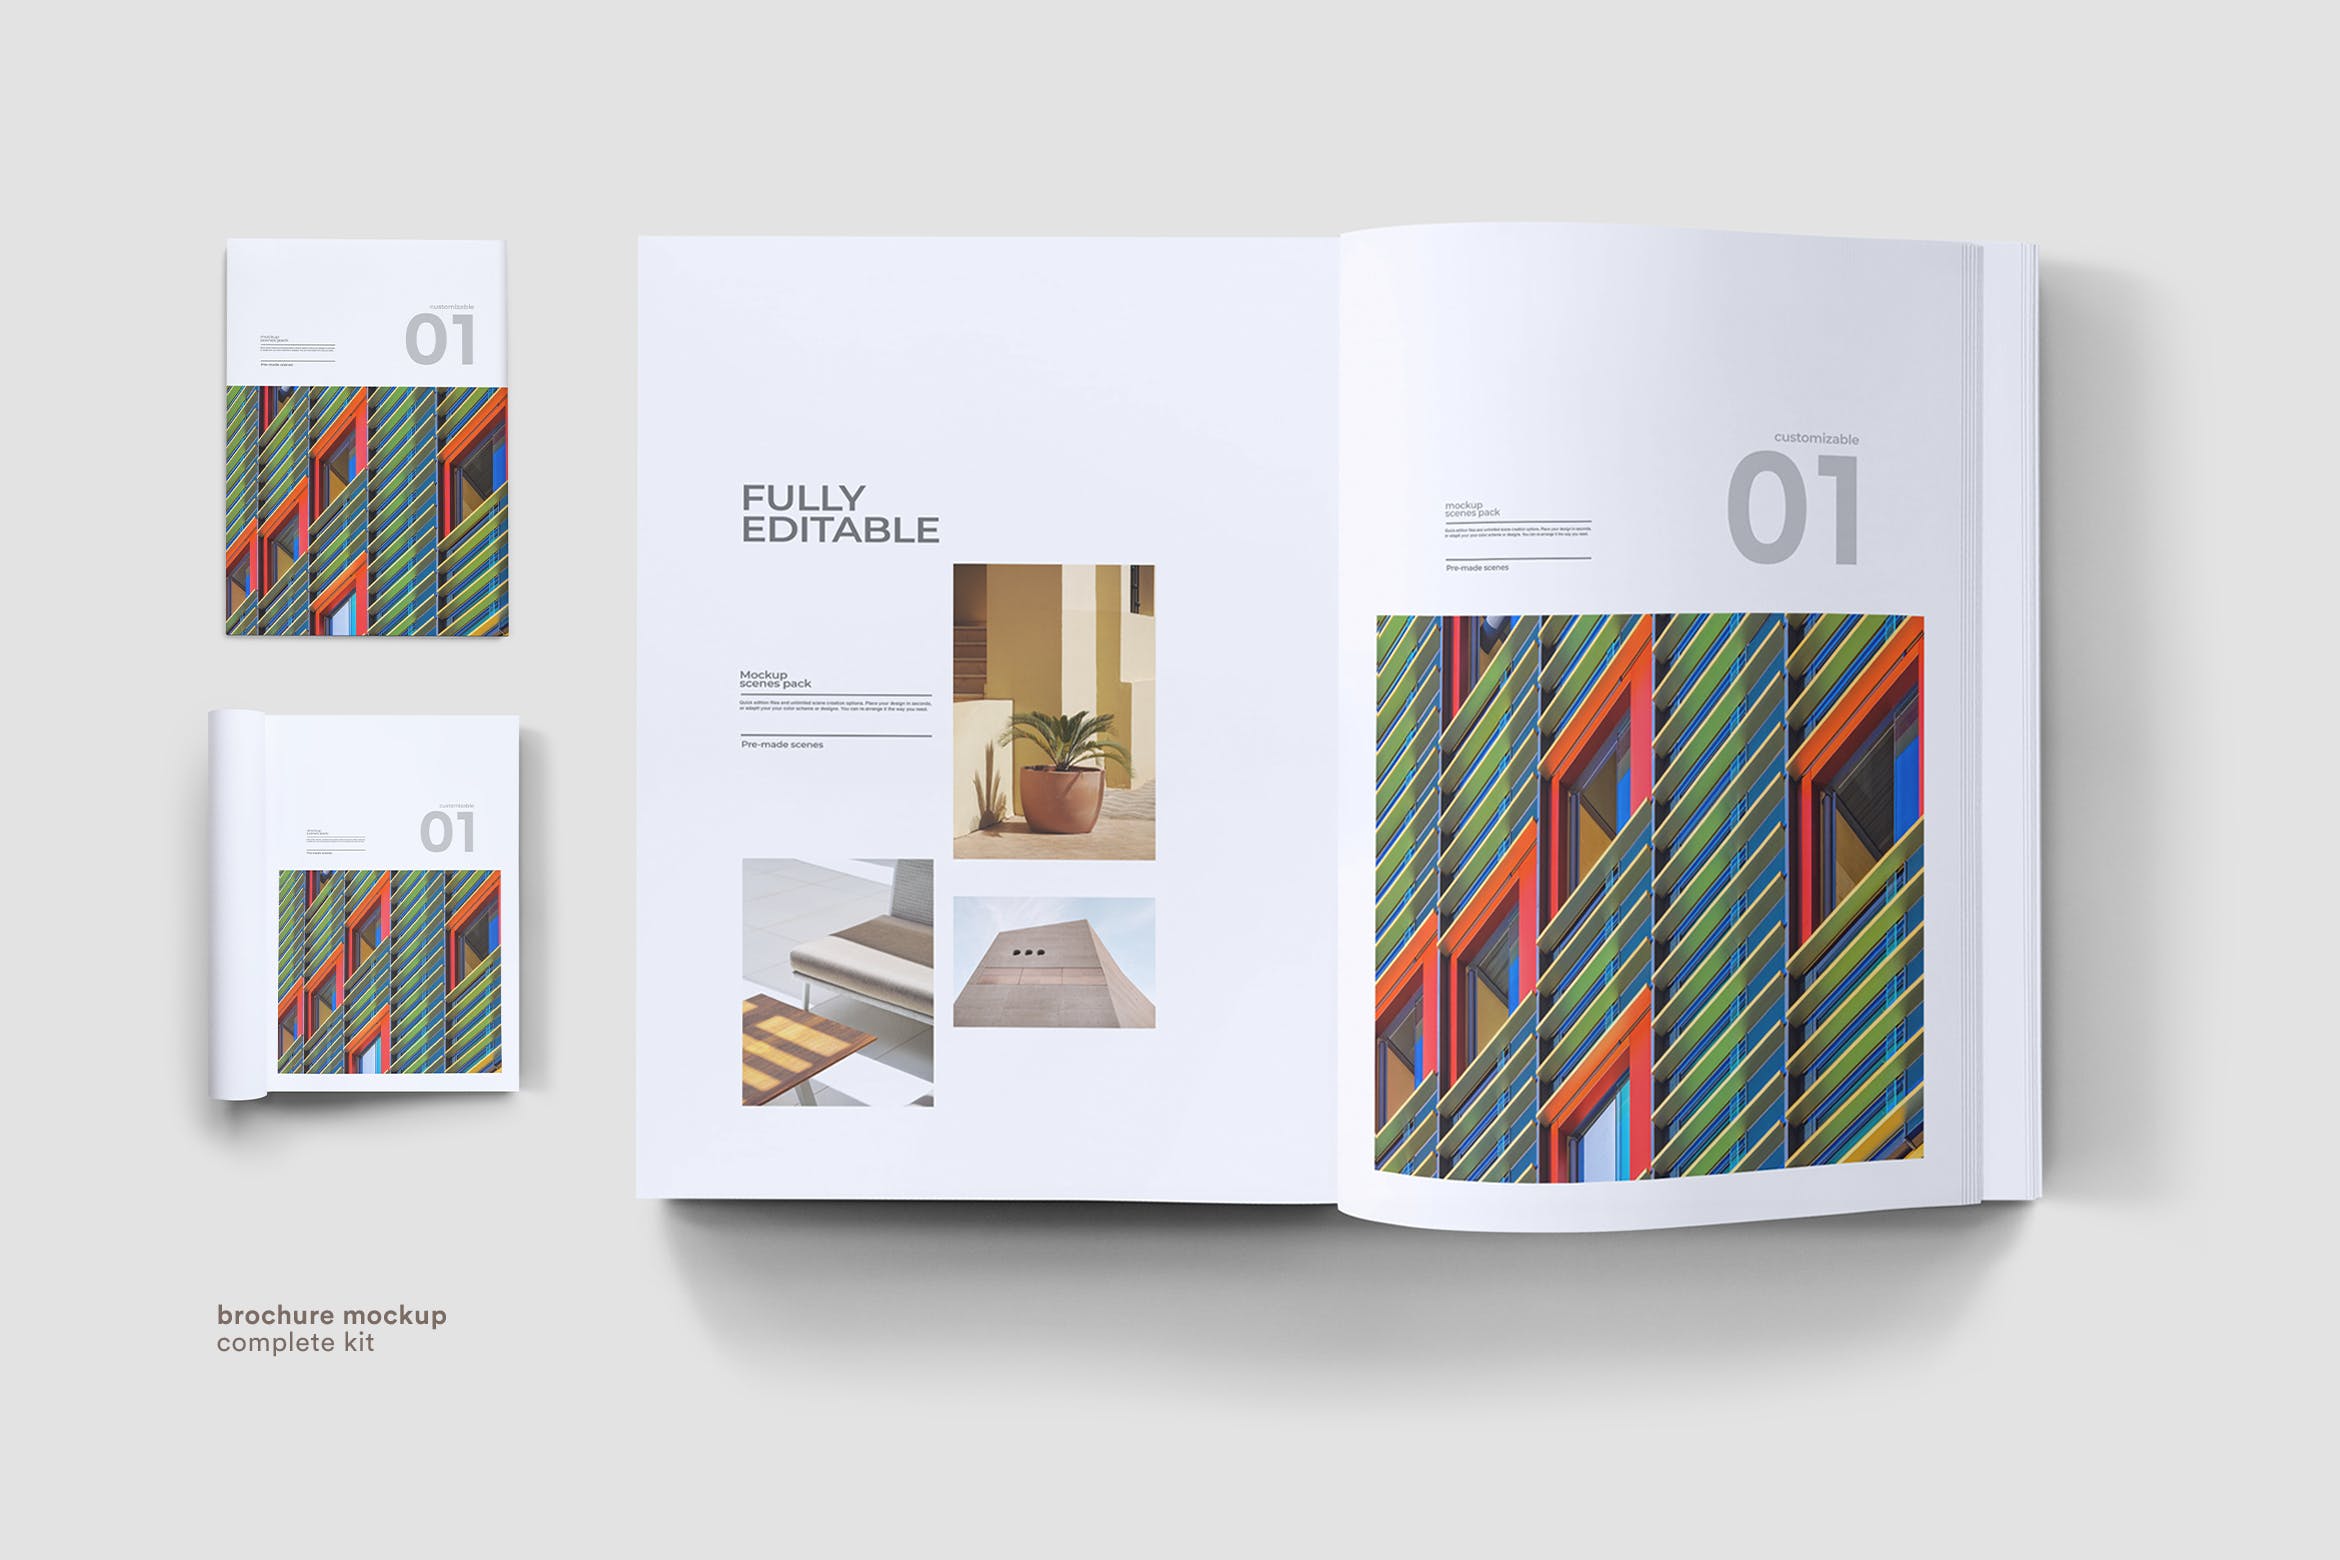 企业画册封面&版式设计效果图样机16图库精选 Brochure Mock Up插图